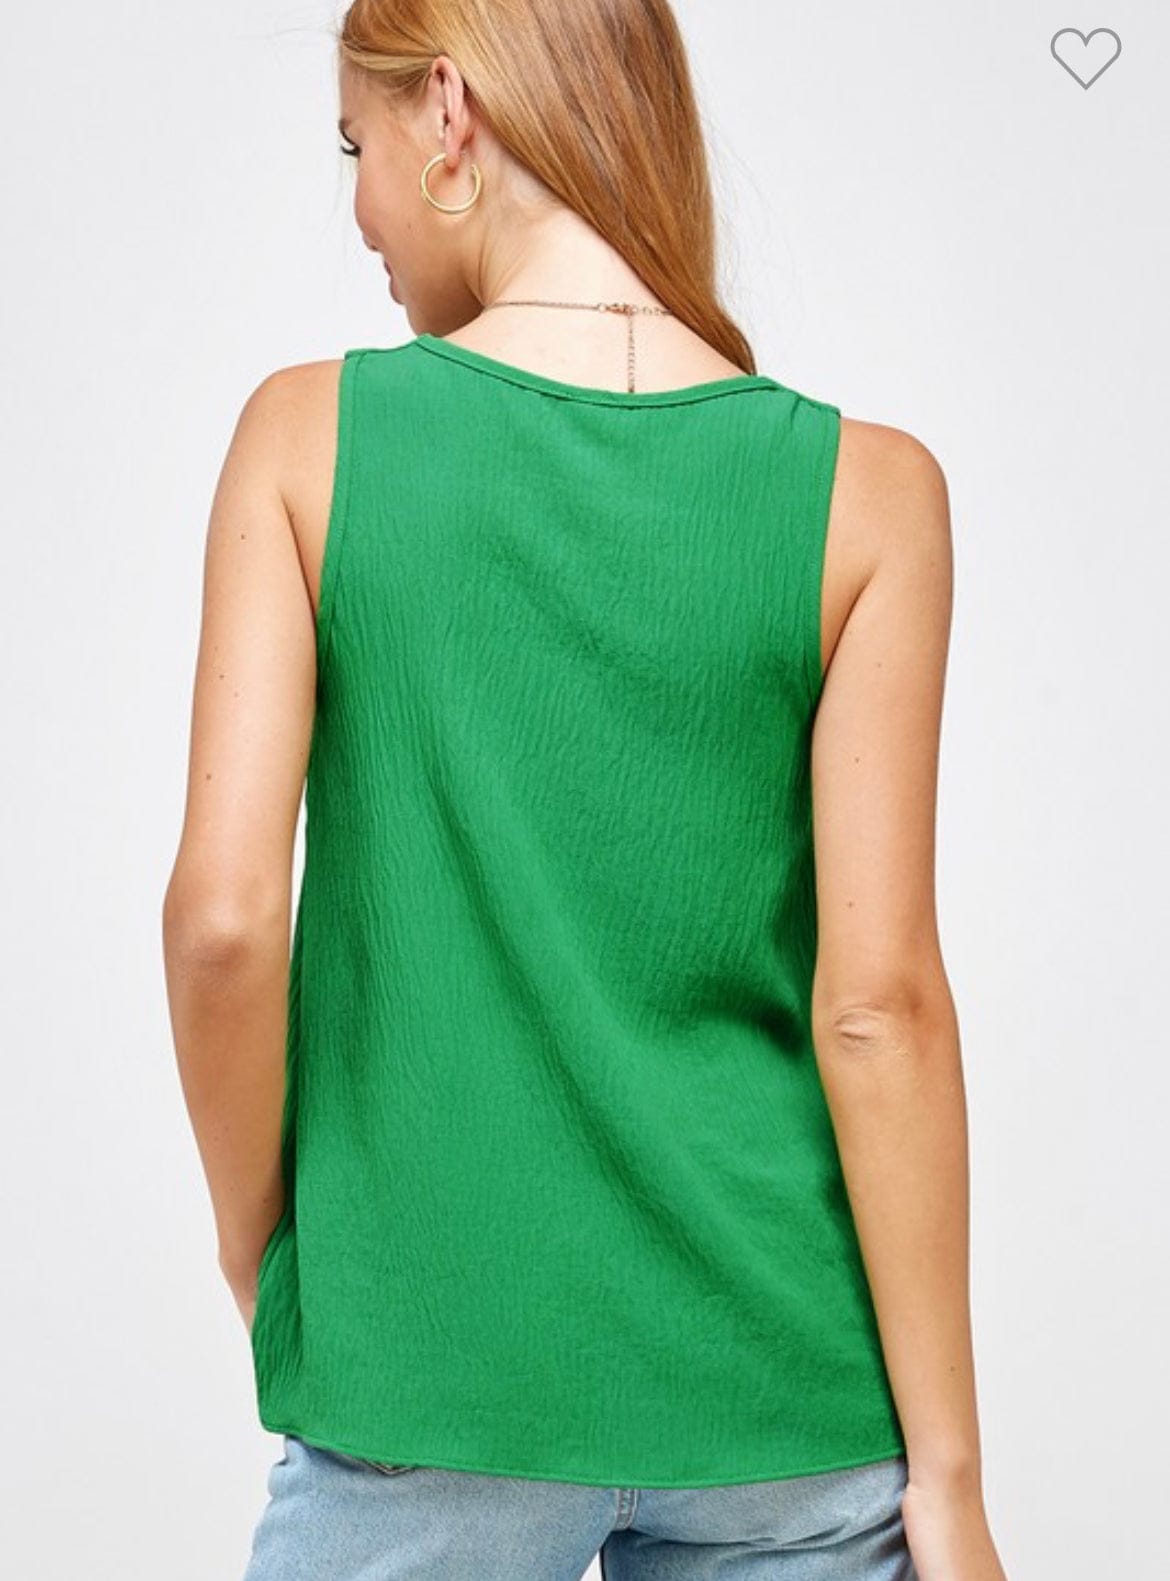 Green V-neck sleeveless top